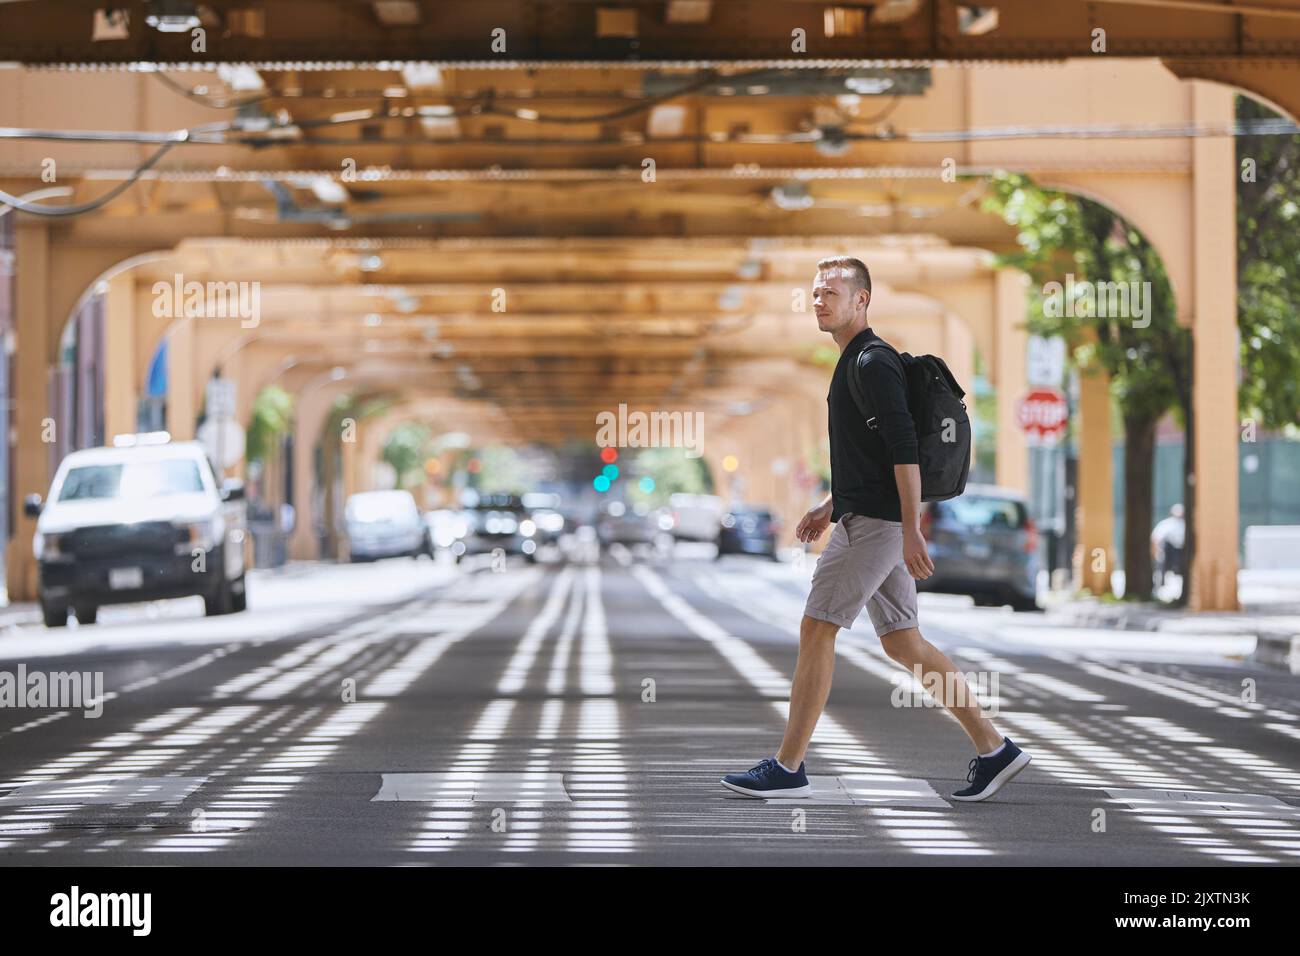 Seitenansicht eines erwachsenen Mannes mit Rucksack, der auf einem Fußgängerüberweg über die Hochbahn der öffentlichen Verkehrsmittel läuft. Chicago, Usa Stockfoto